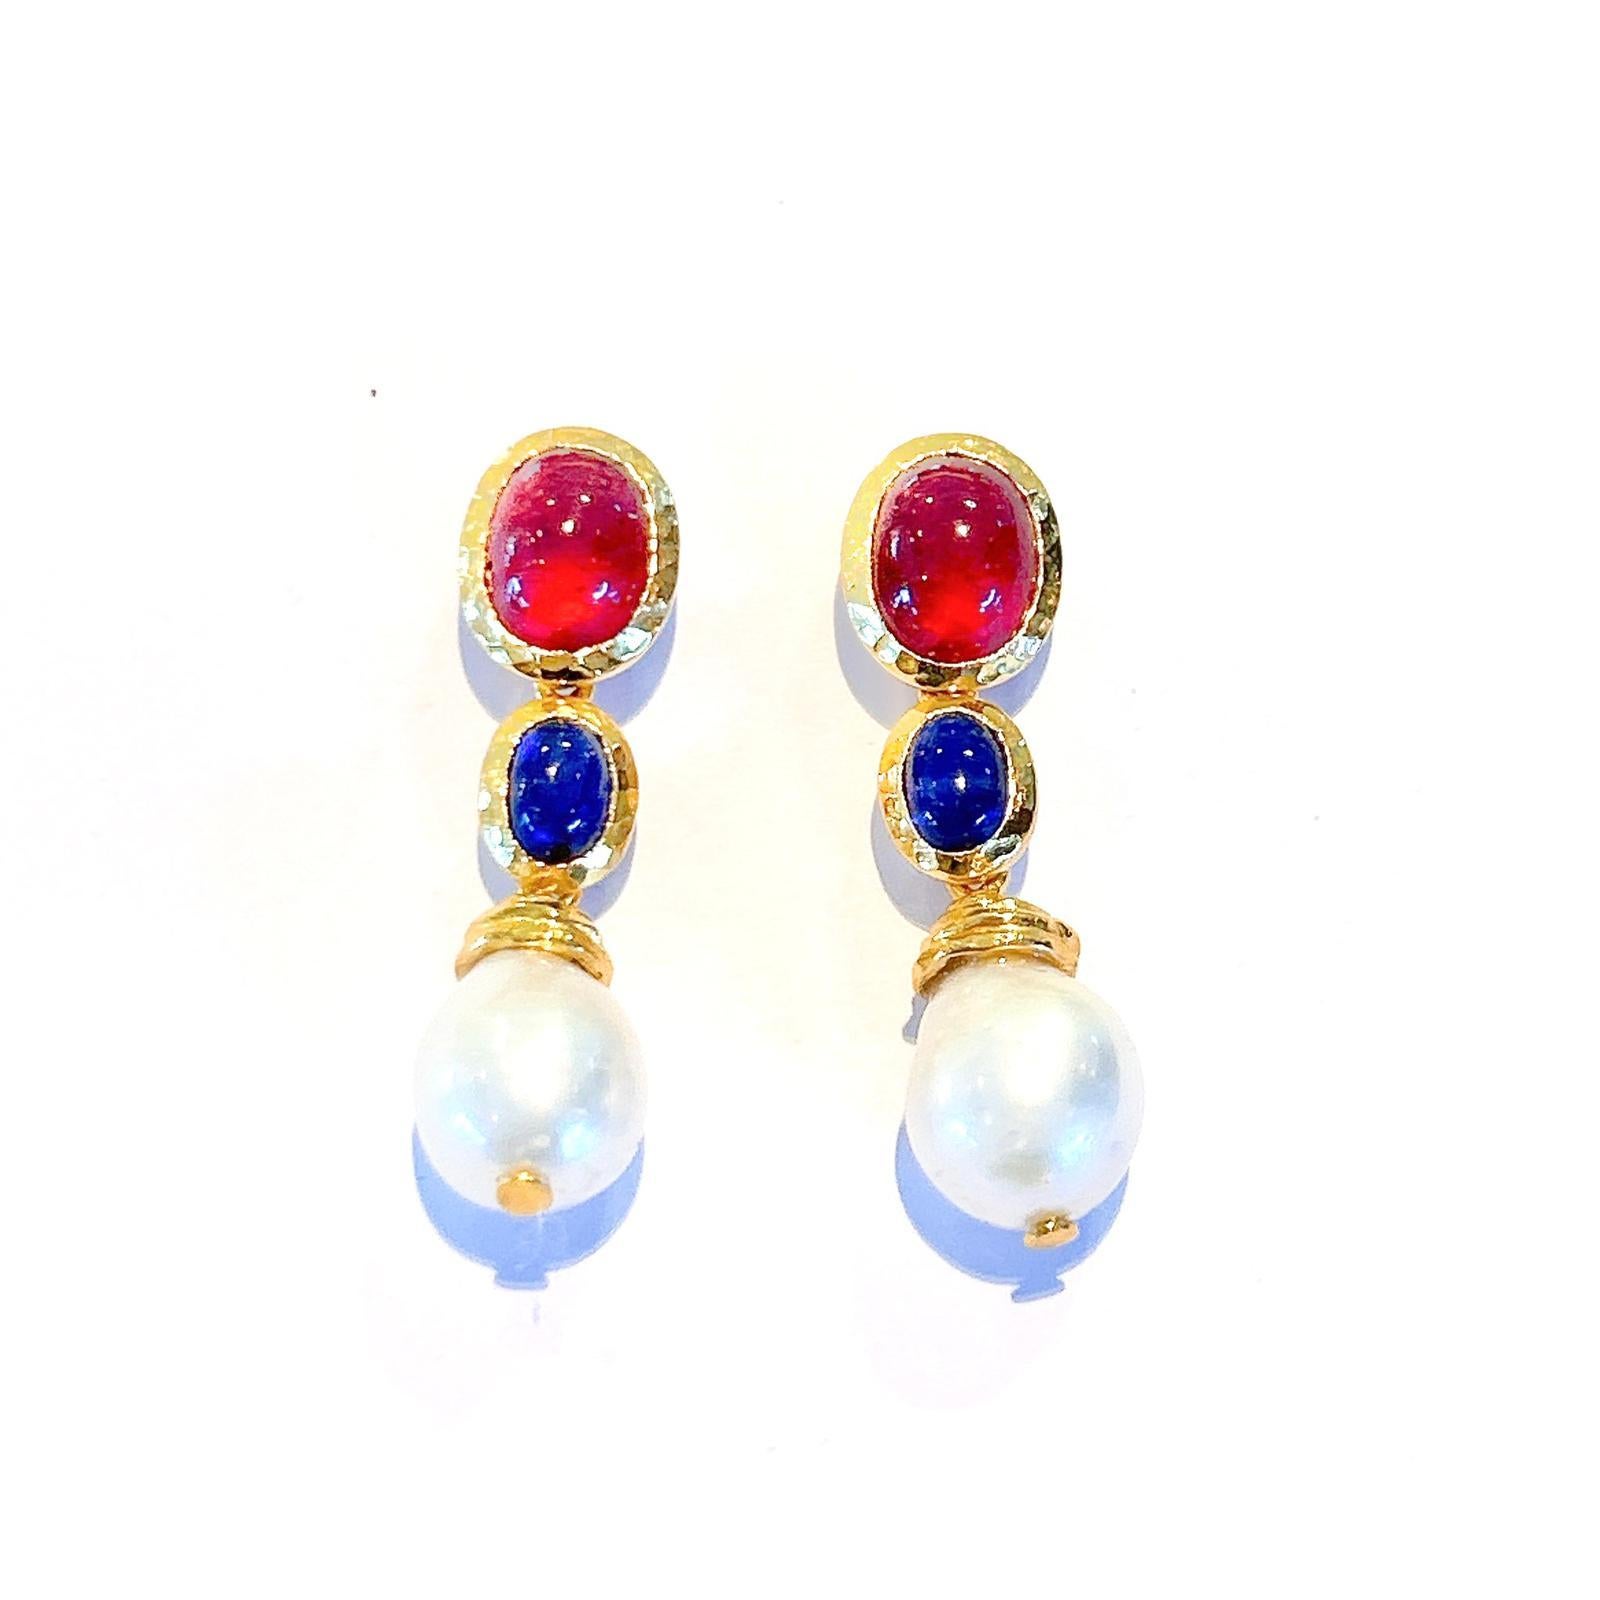 Bochic “Capri” Red Ruby & Blue Sapphire Earrings Set in 22k Gold & Silver For Sale 3